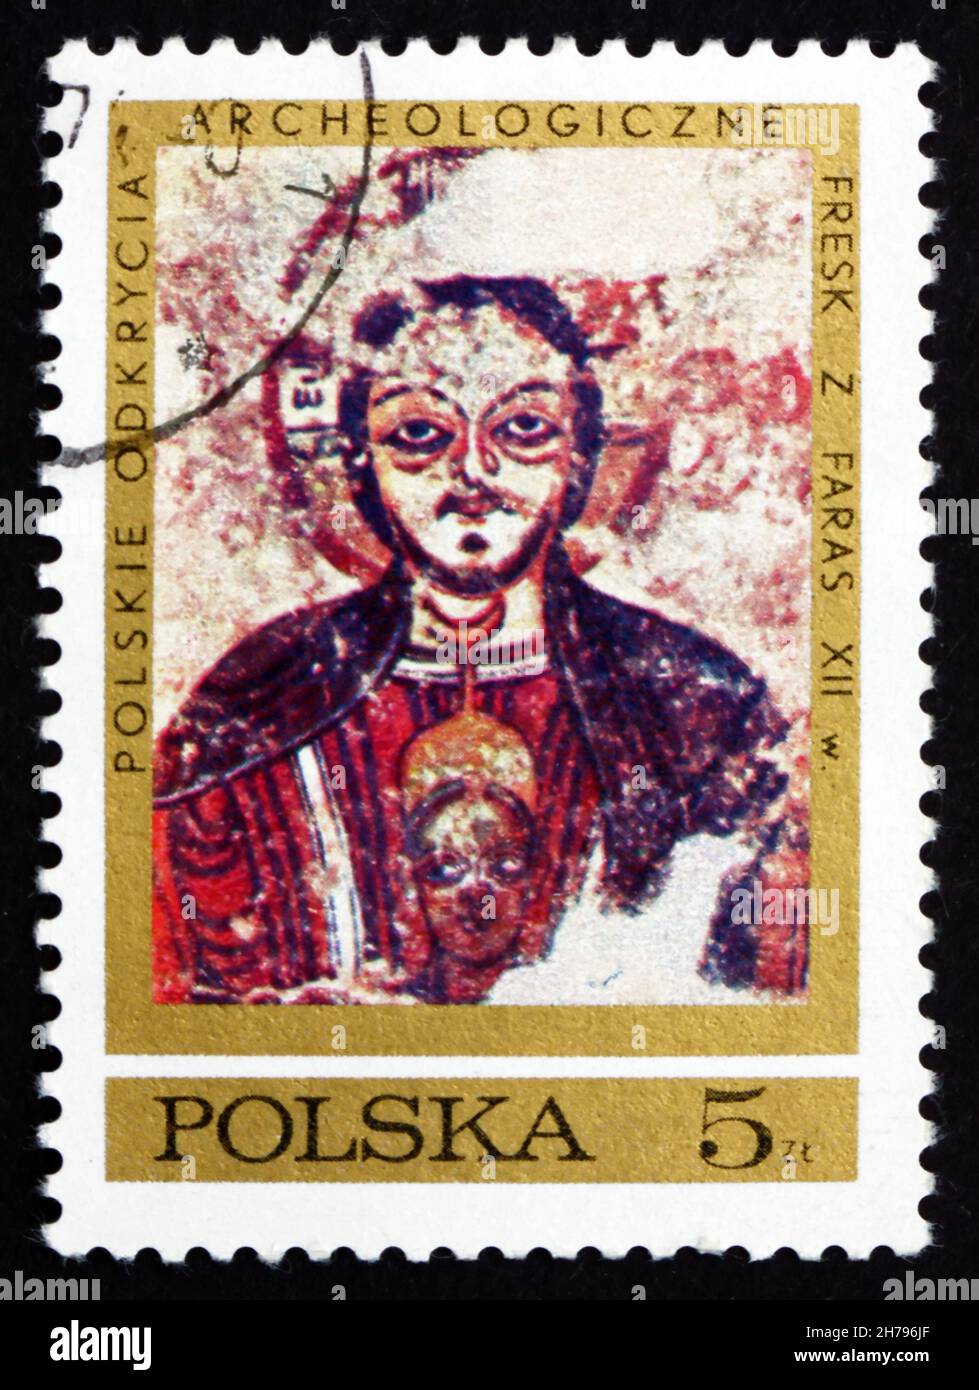 POLOGNE - VERS 1971: Un timbre imprimé en Pologne montre le Christ protégeant la dignité nubienne, Fresco de la cathédrale de Faras, Nubia, archéologique polonais Banque D'Images